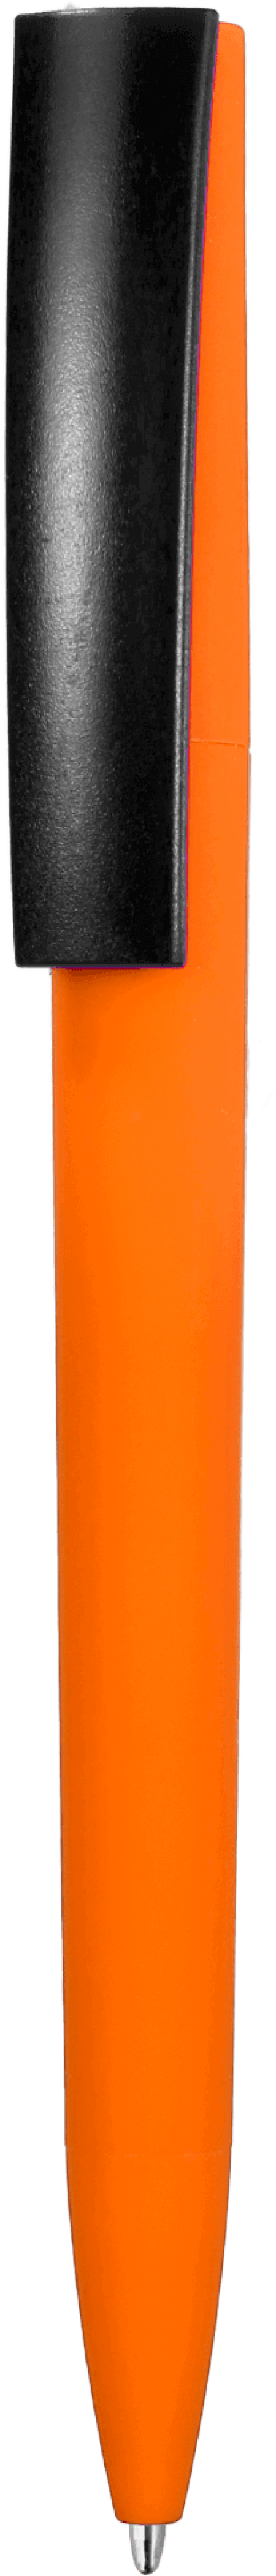 Ручка ZETA SOFT MIX Оранжевая с черным 1024.05.08